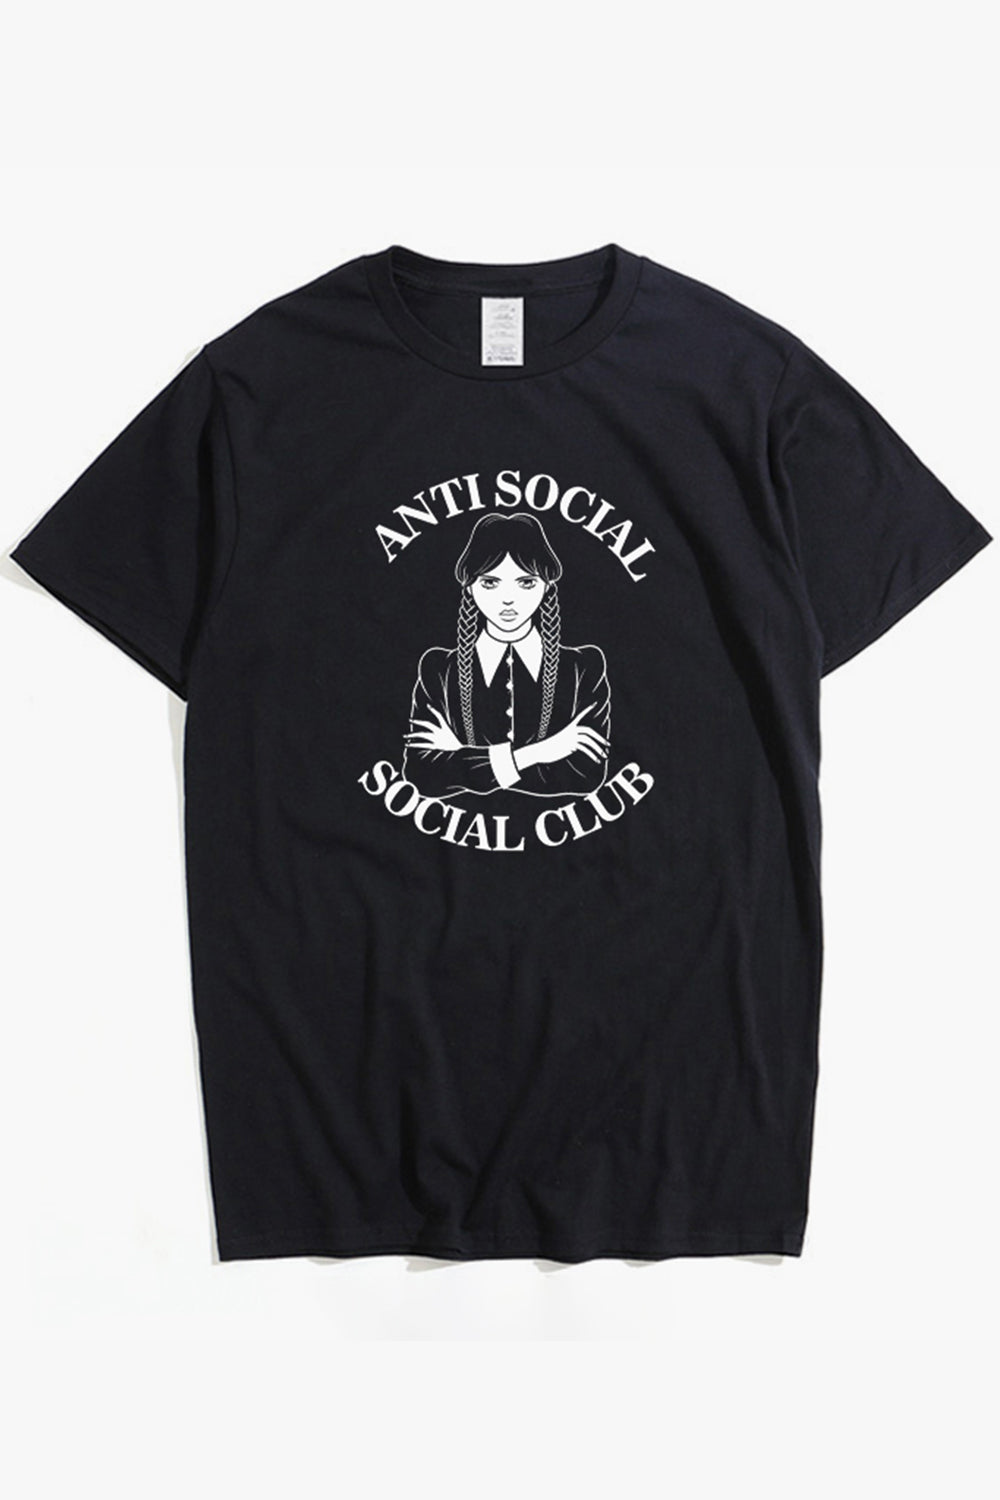 Wednesday Black Tee Anti Social Social Club